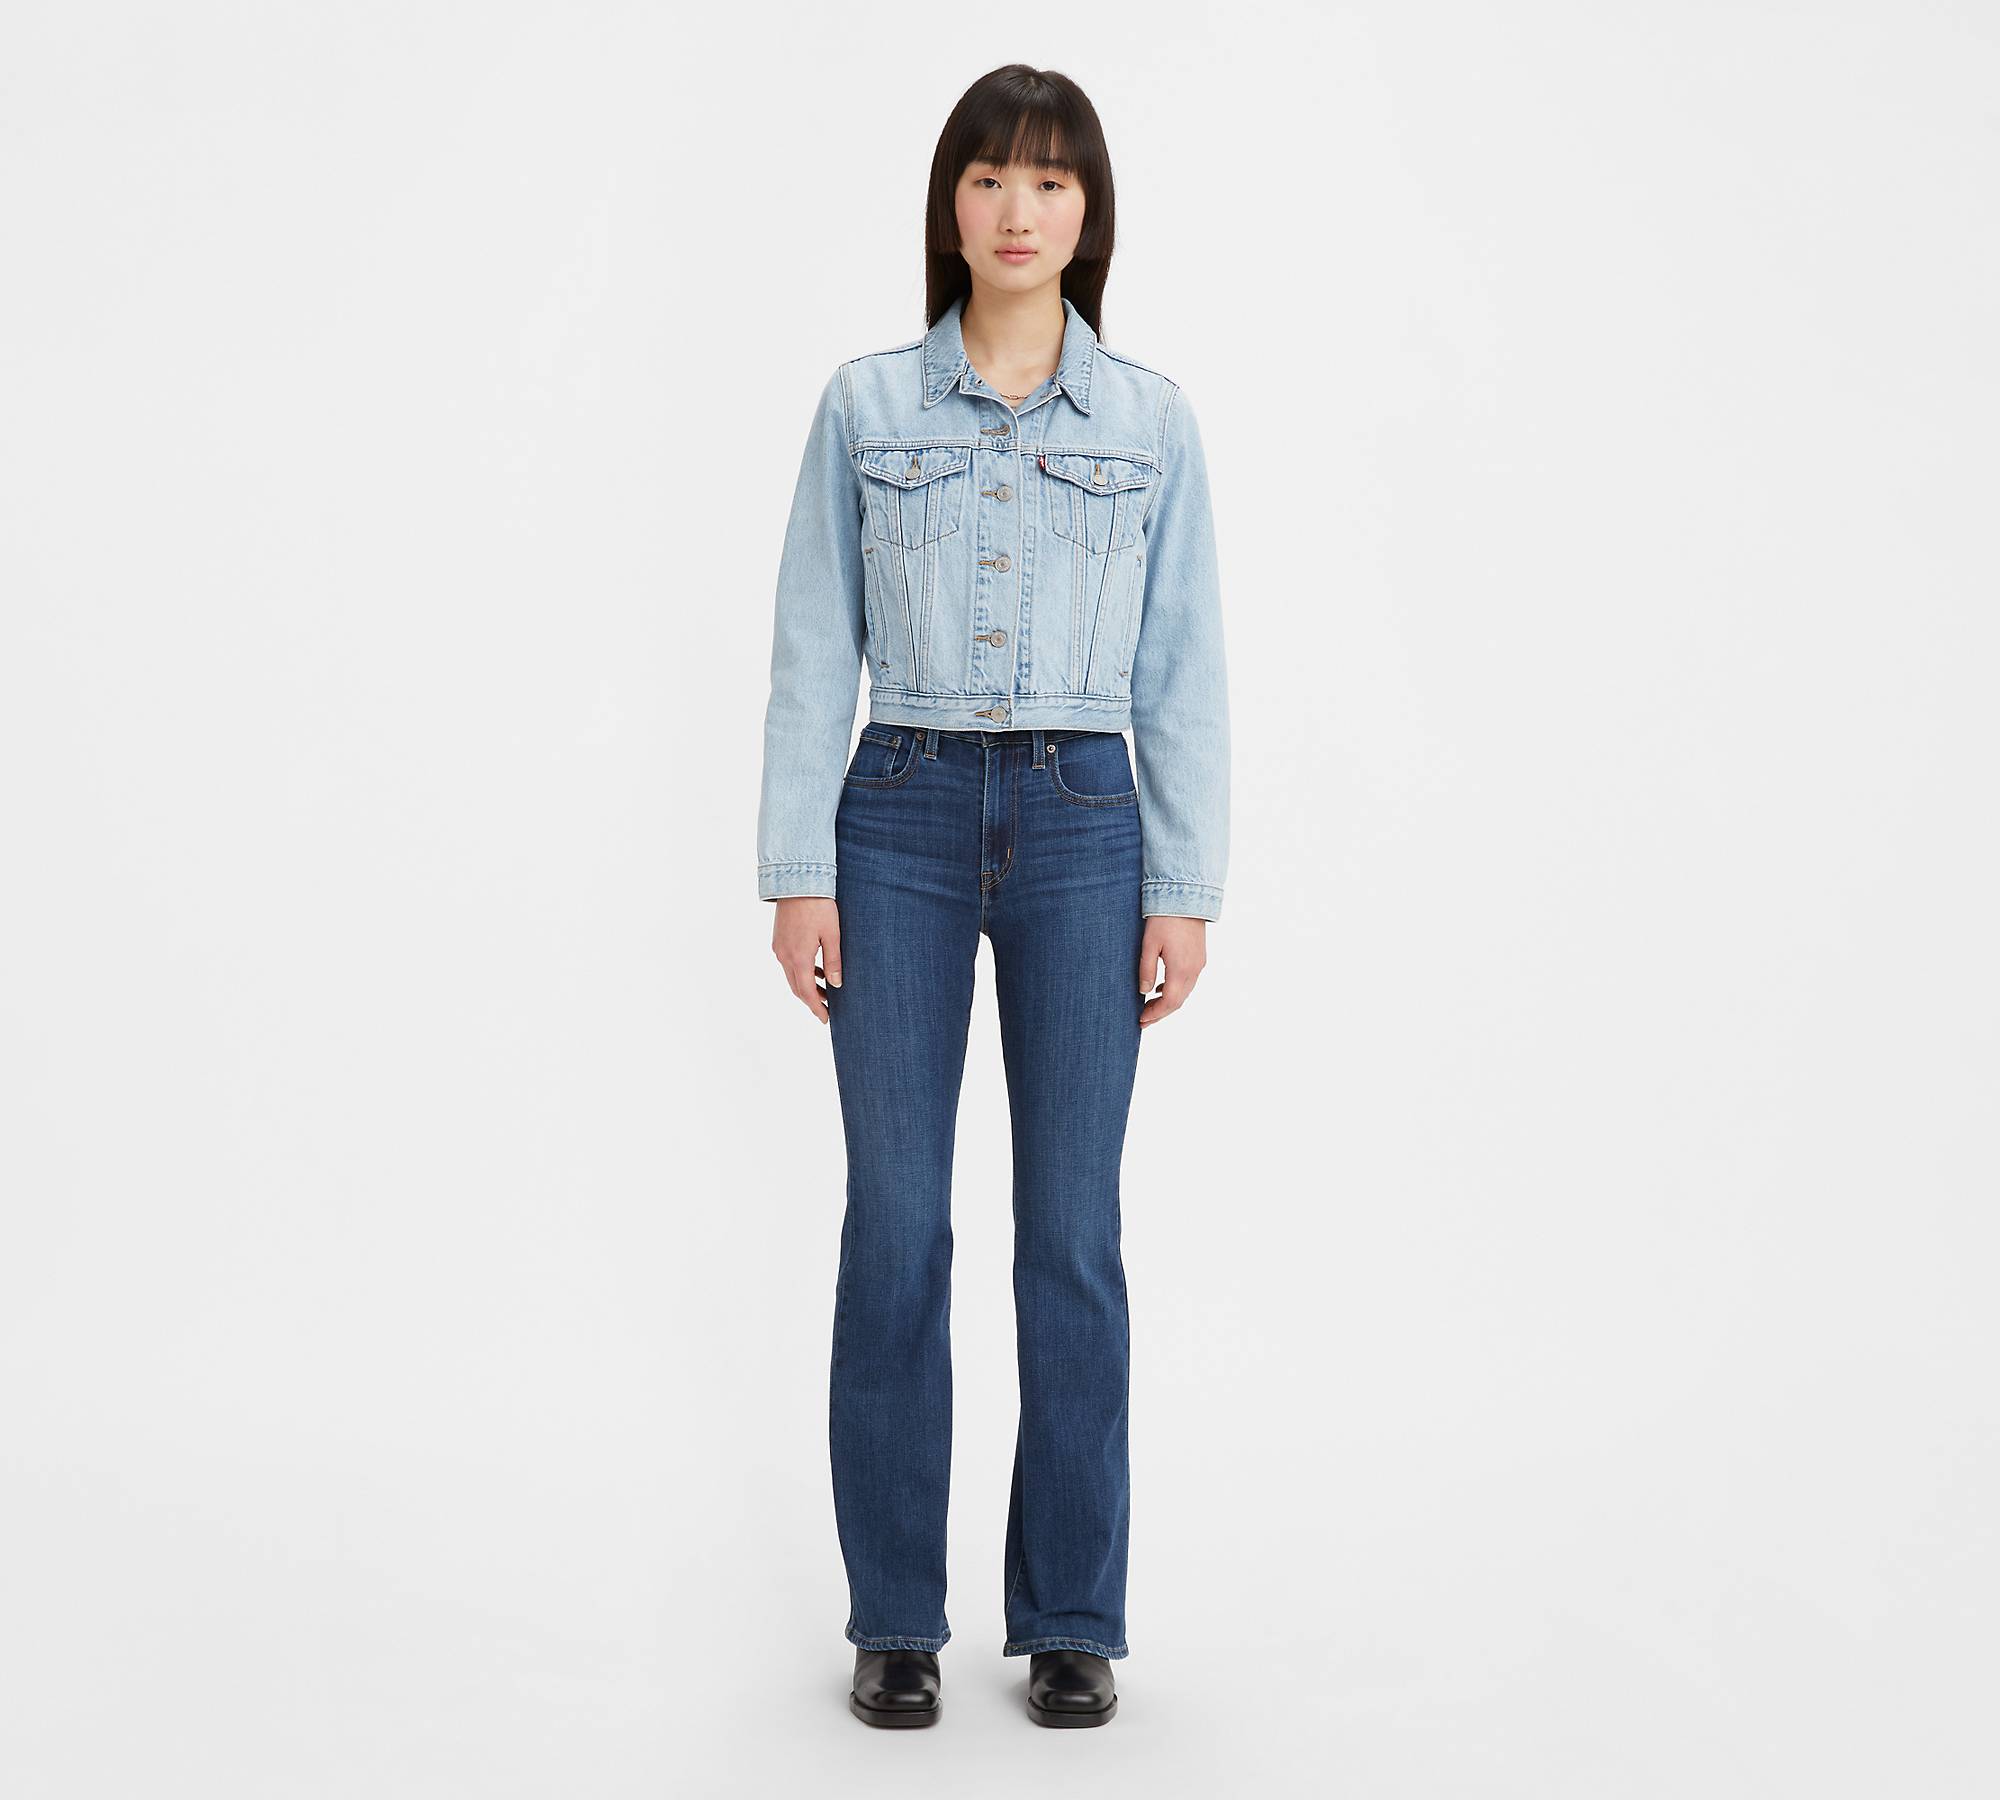 726™ Flare Jeans mit hohem Bund 1